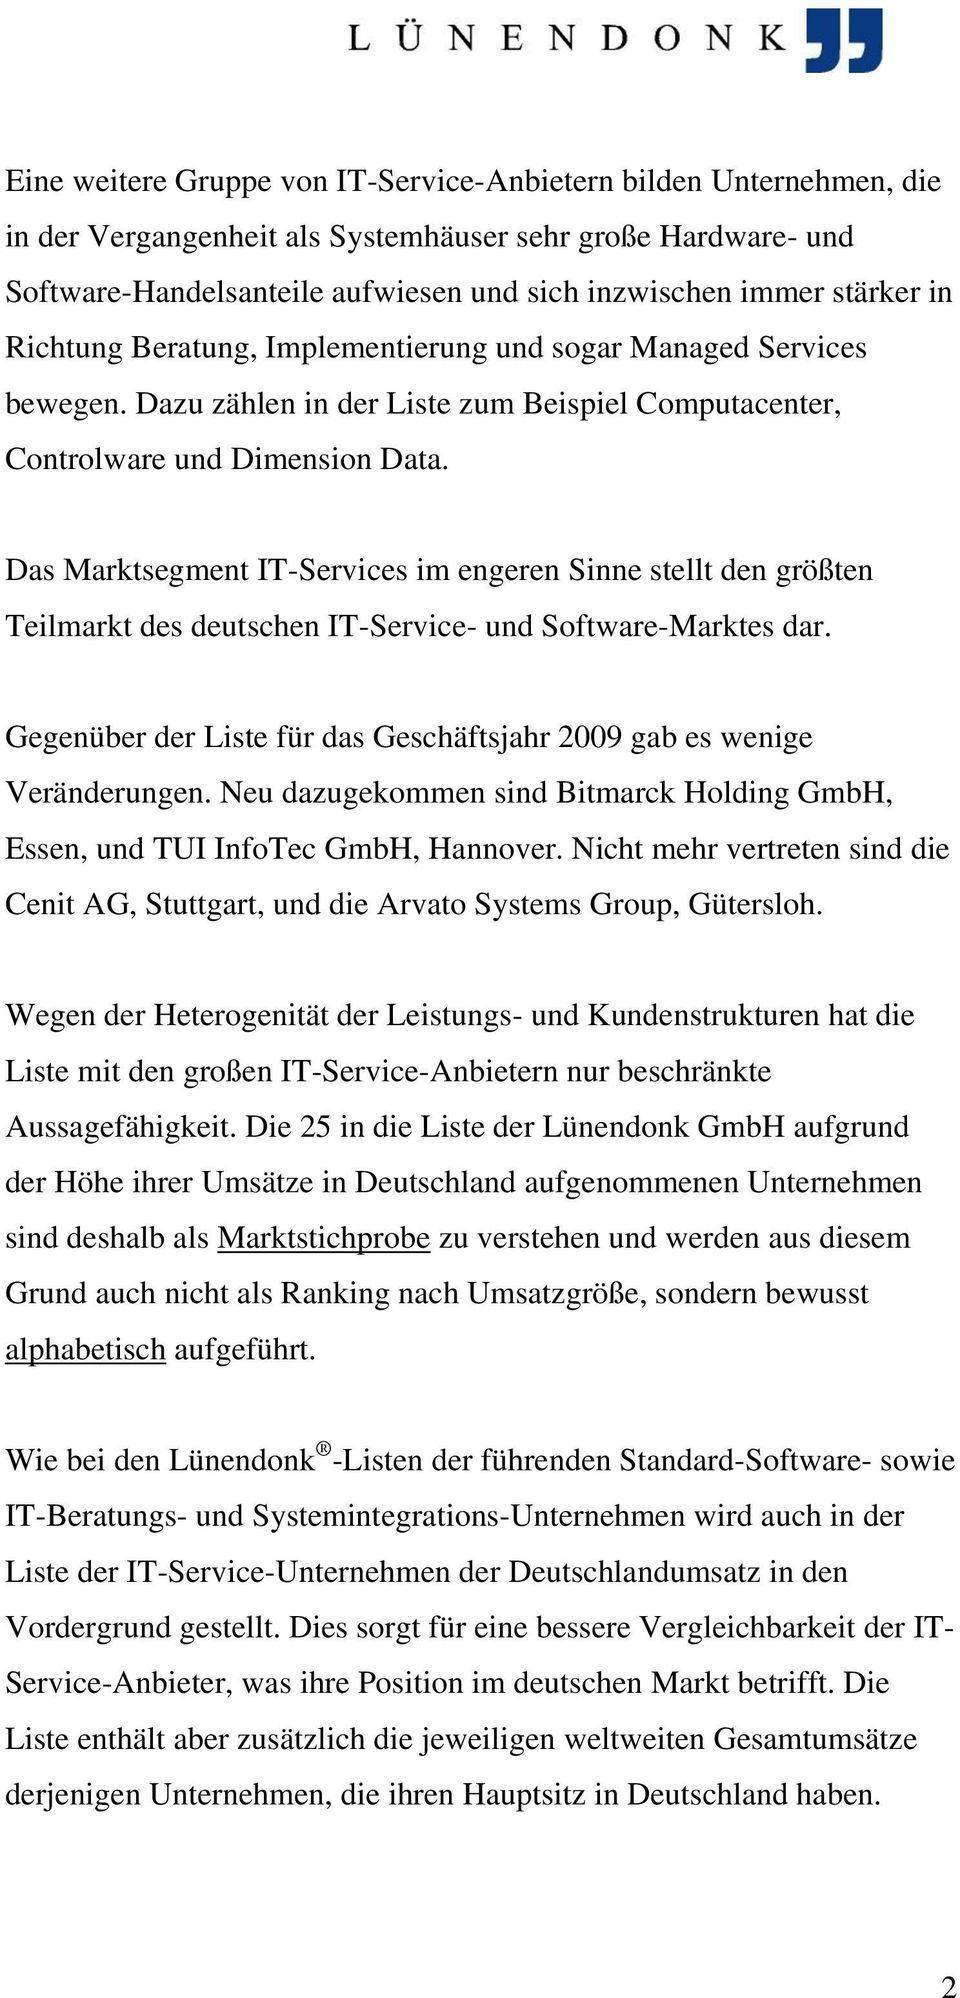 Das Marktsegment IT-Services im engeren Sinne stellt den größten Teilmarkt des deutschen IT-Service- und Software-Marktes dar.